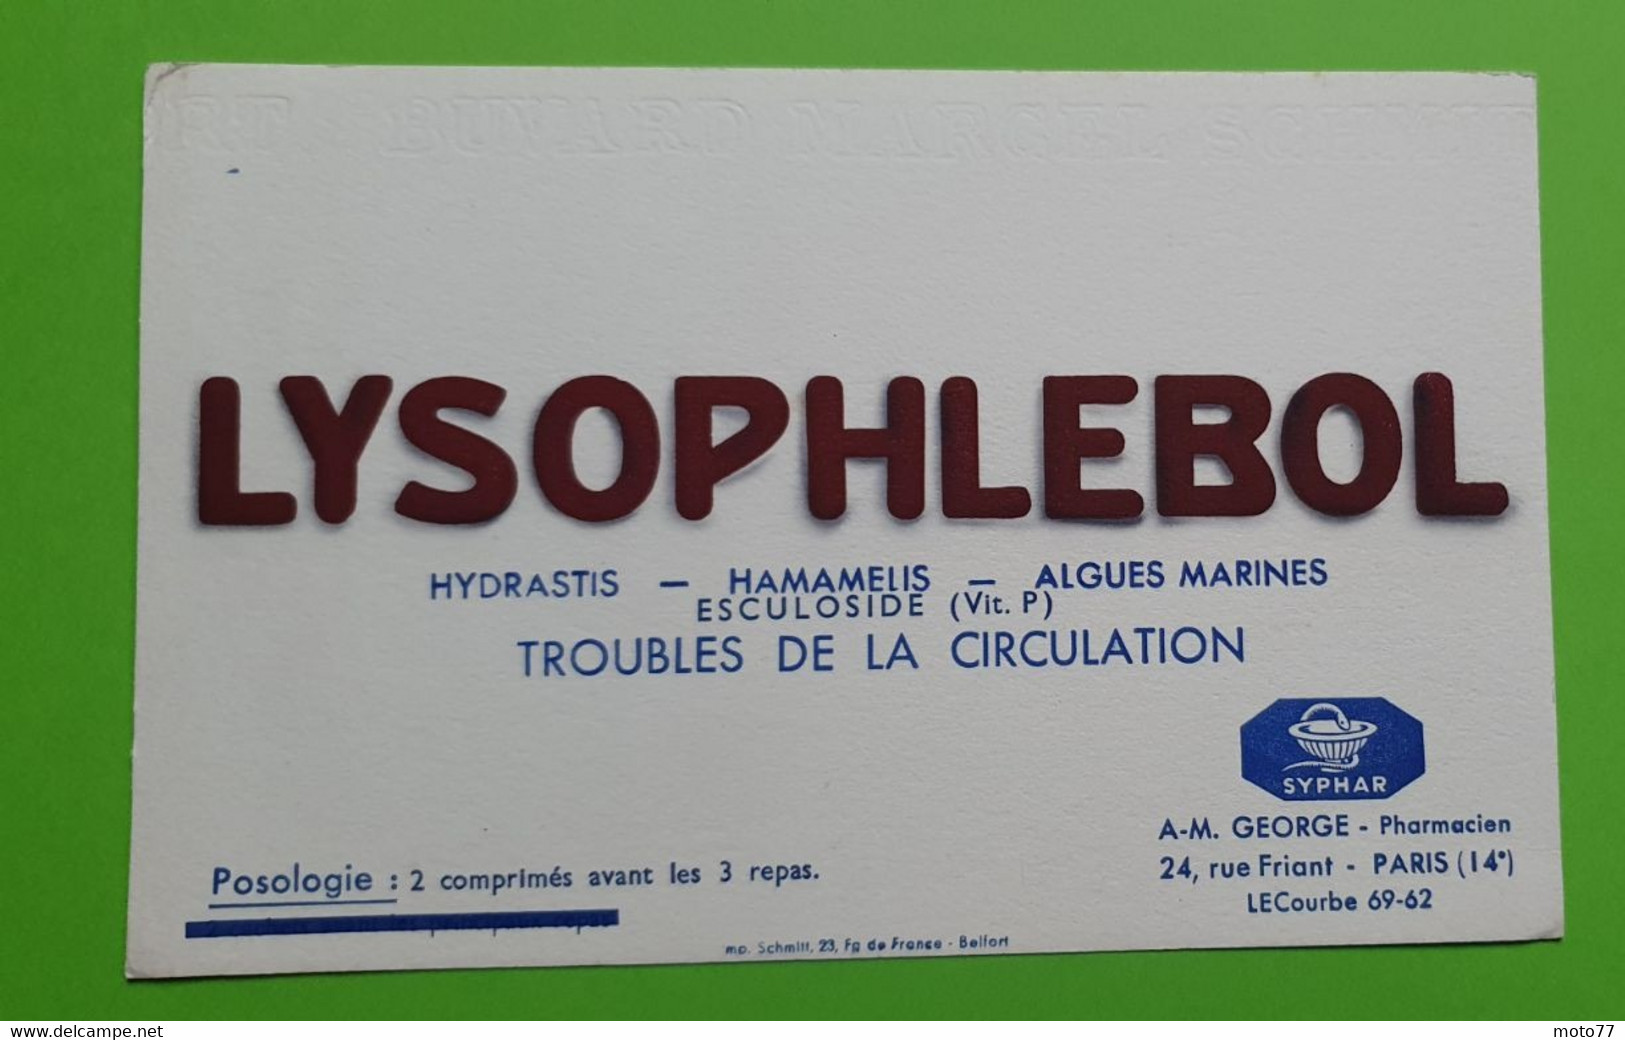 Buvard 548 - Laboratoire Syphar - LYSOPHLEBOL - Etat D'usage : Voir Photos - 21x13.5 Cm Environ - Vers 1950 - Produits Pharmaceutiques